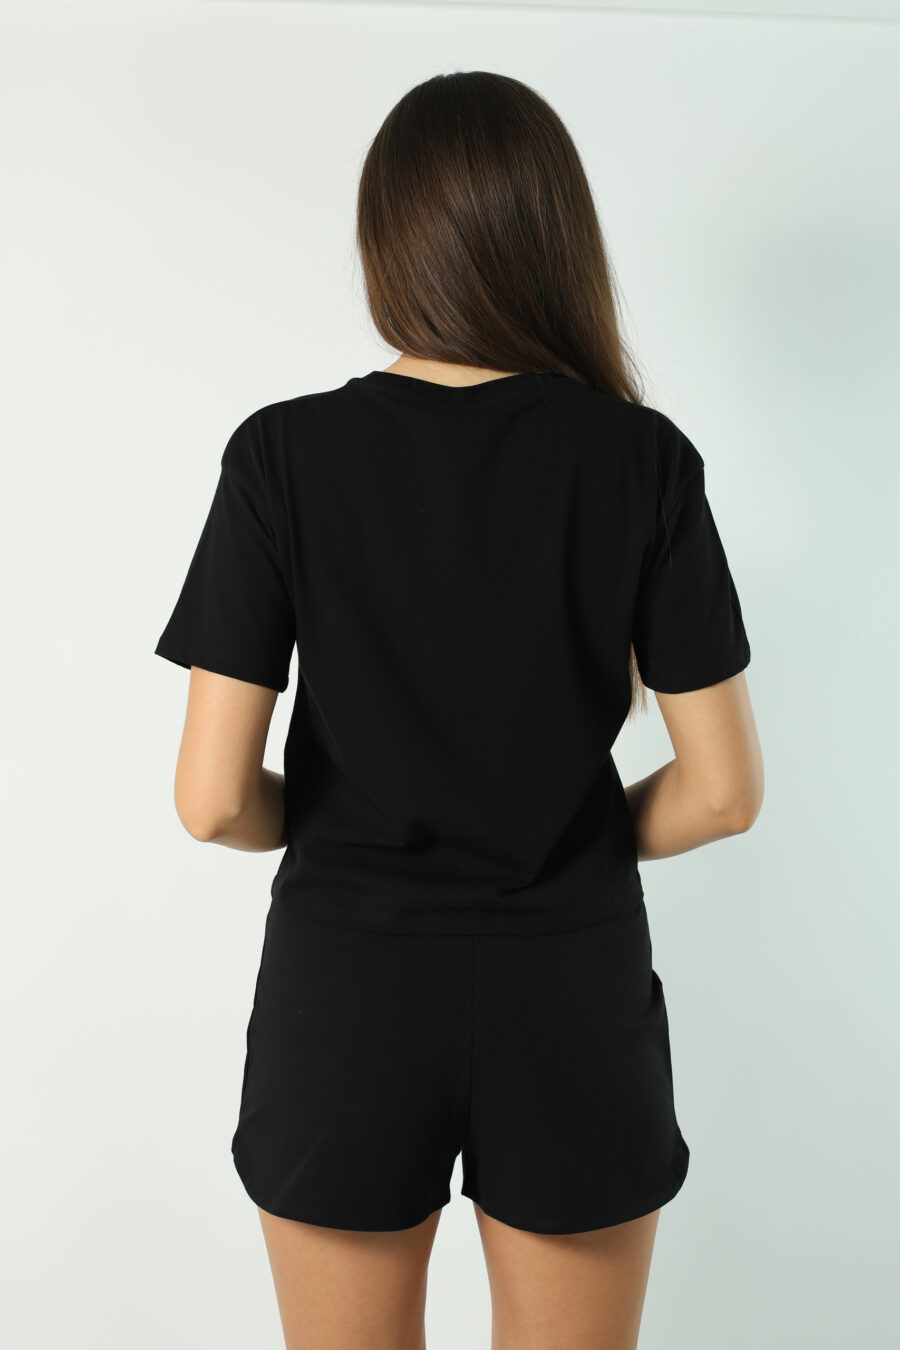 Camiseta negra con minilogo "animal print" - Photos 2357